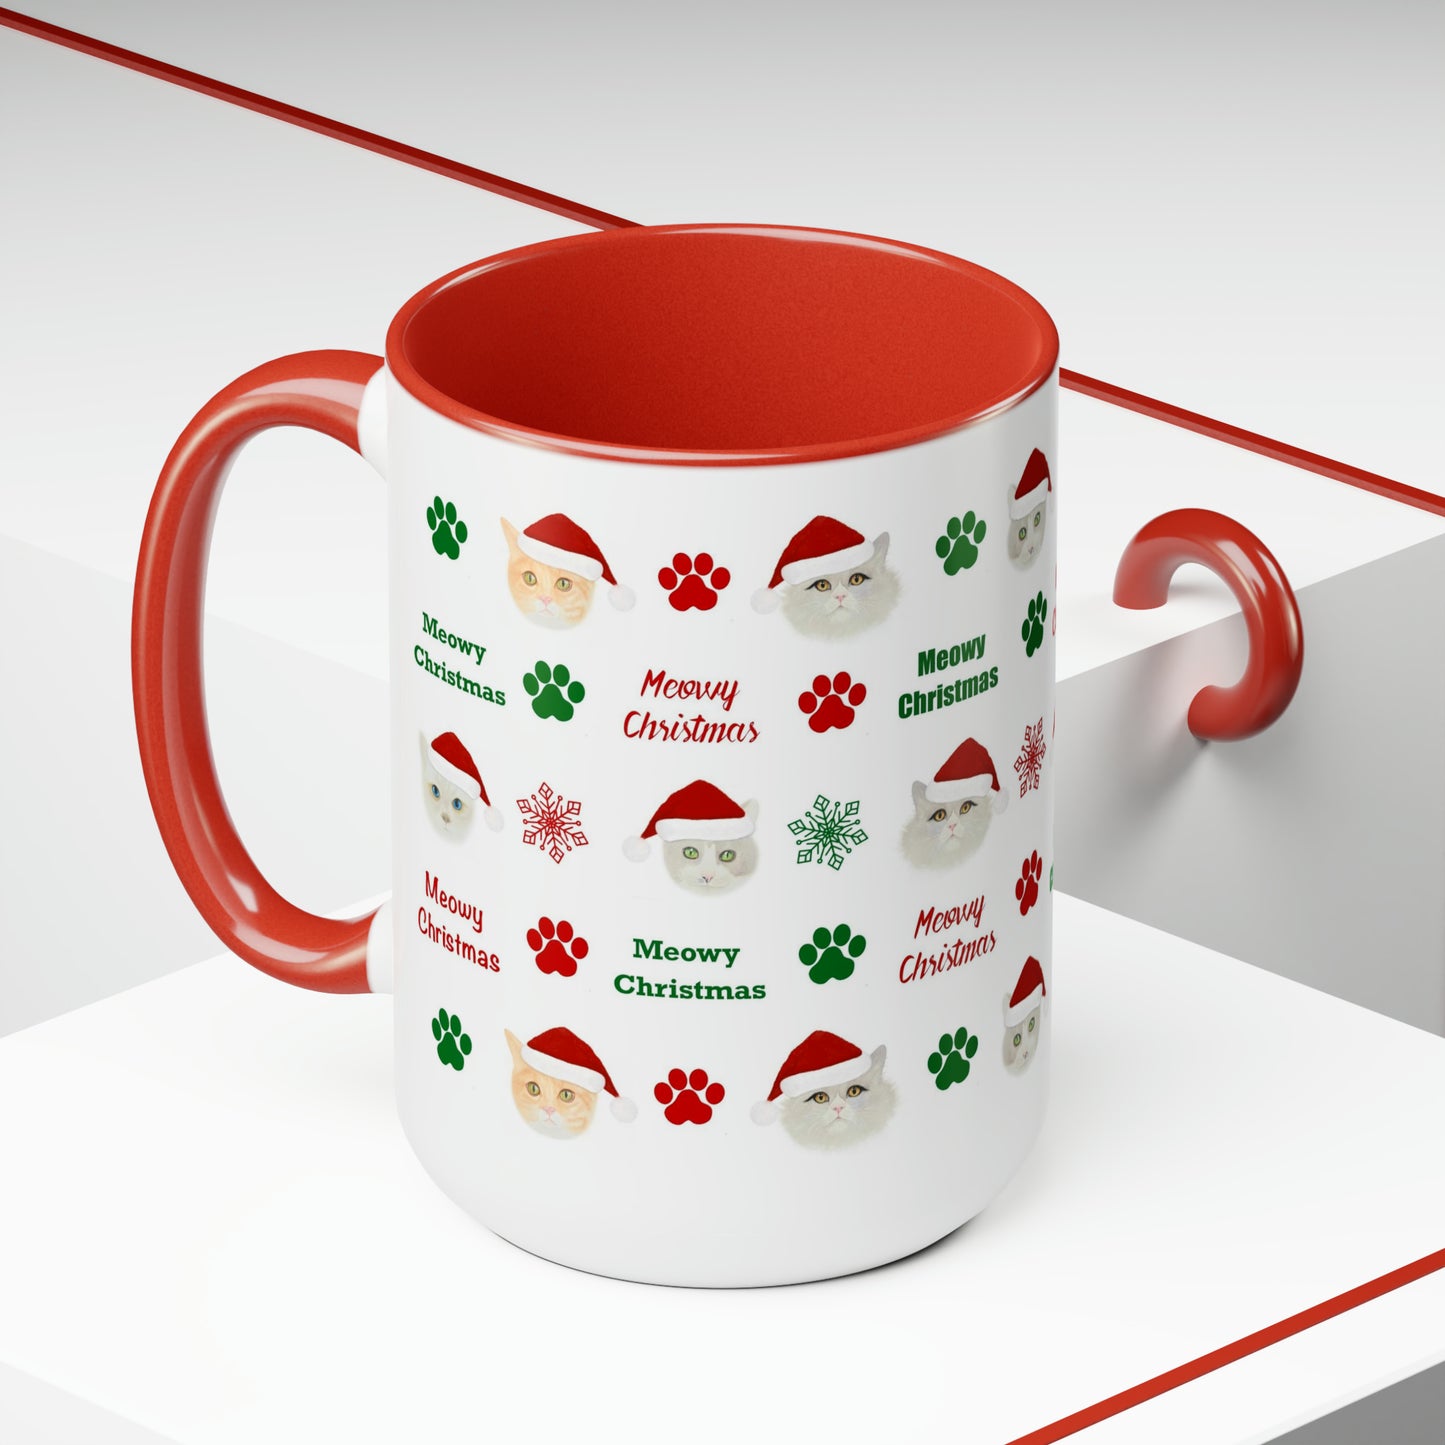 Meowy Christmas Two-Tone Coffee Mug, 15oz